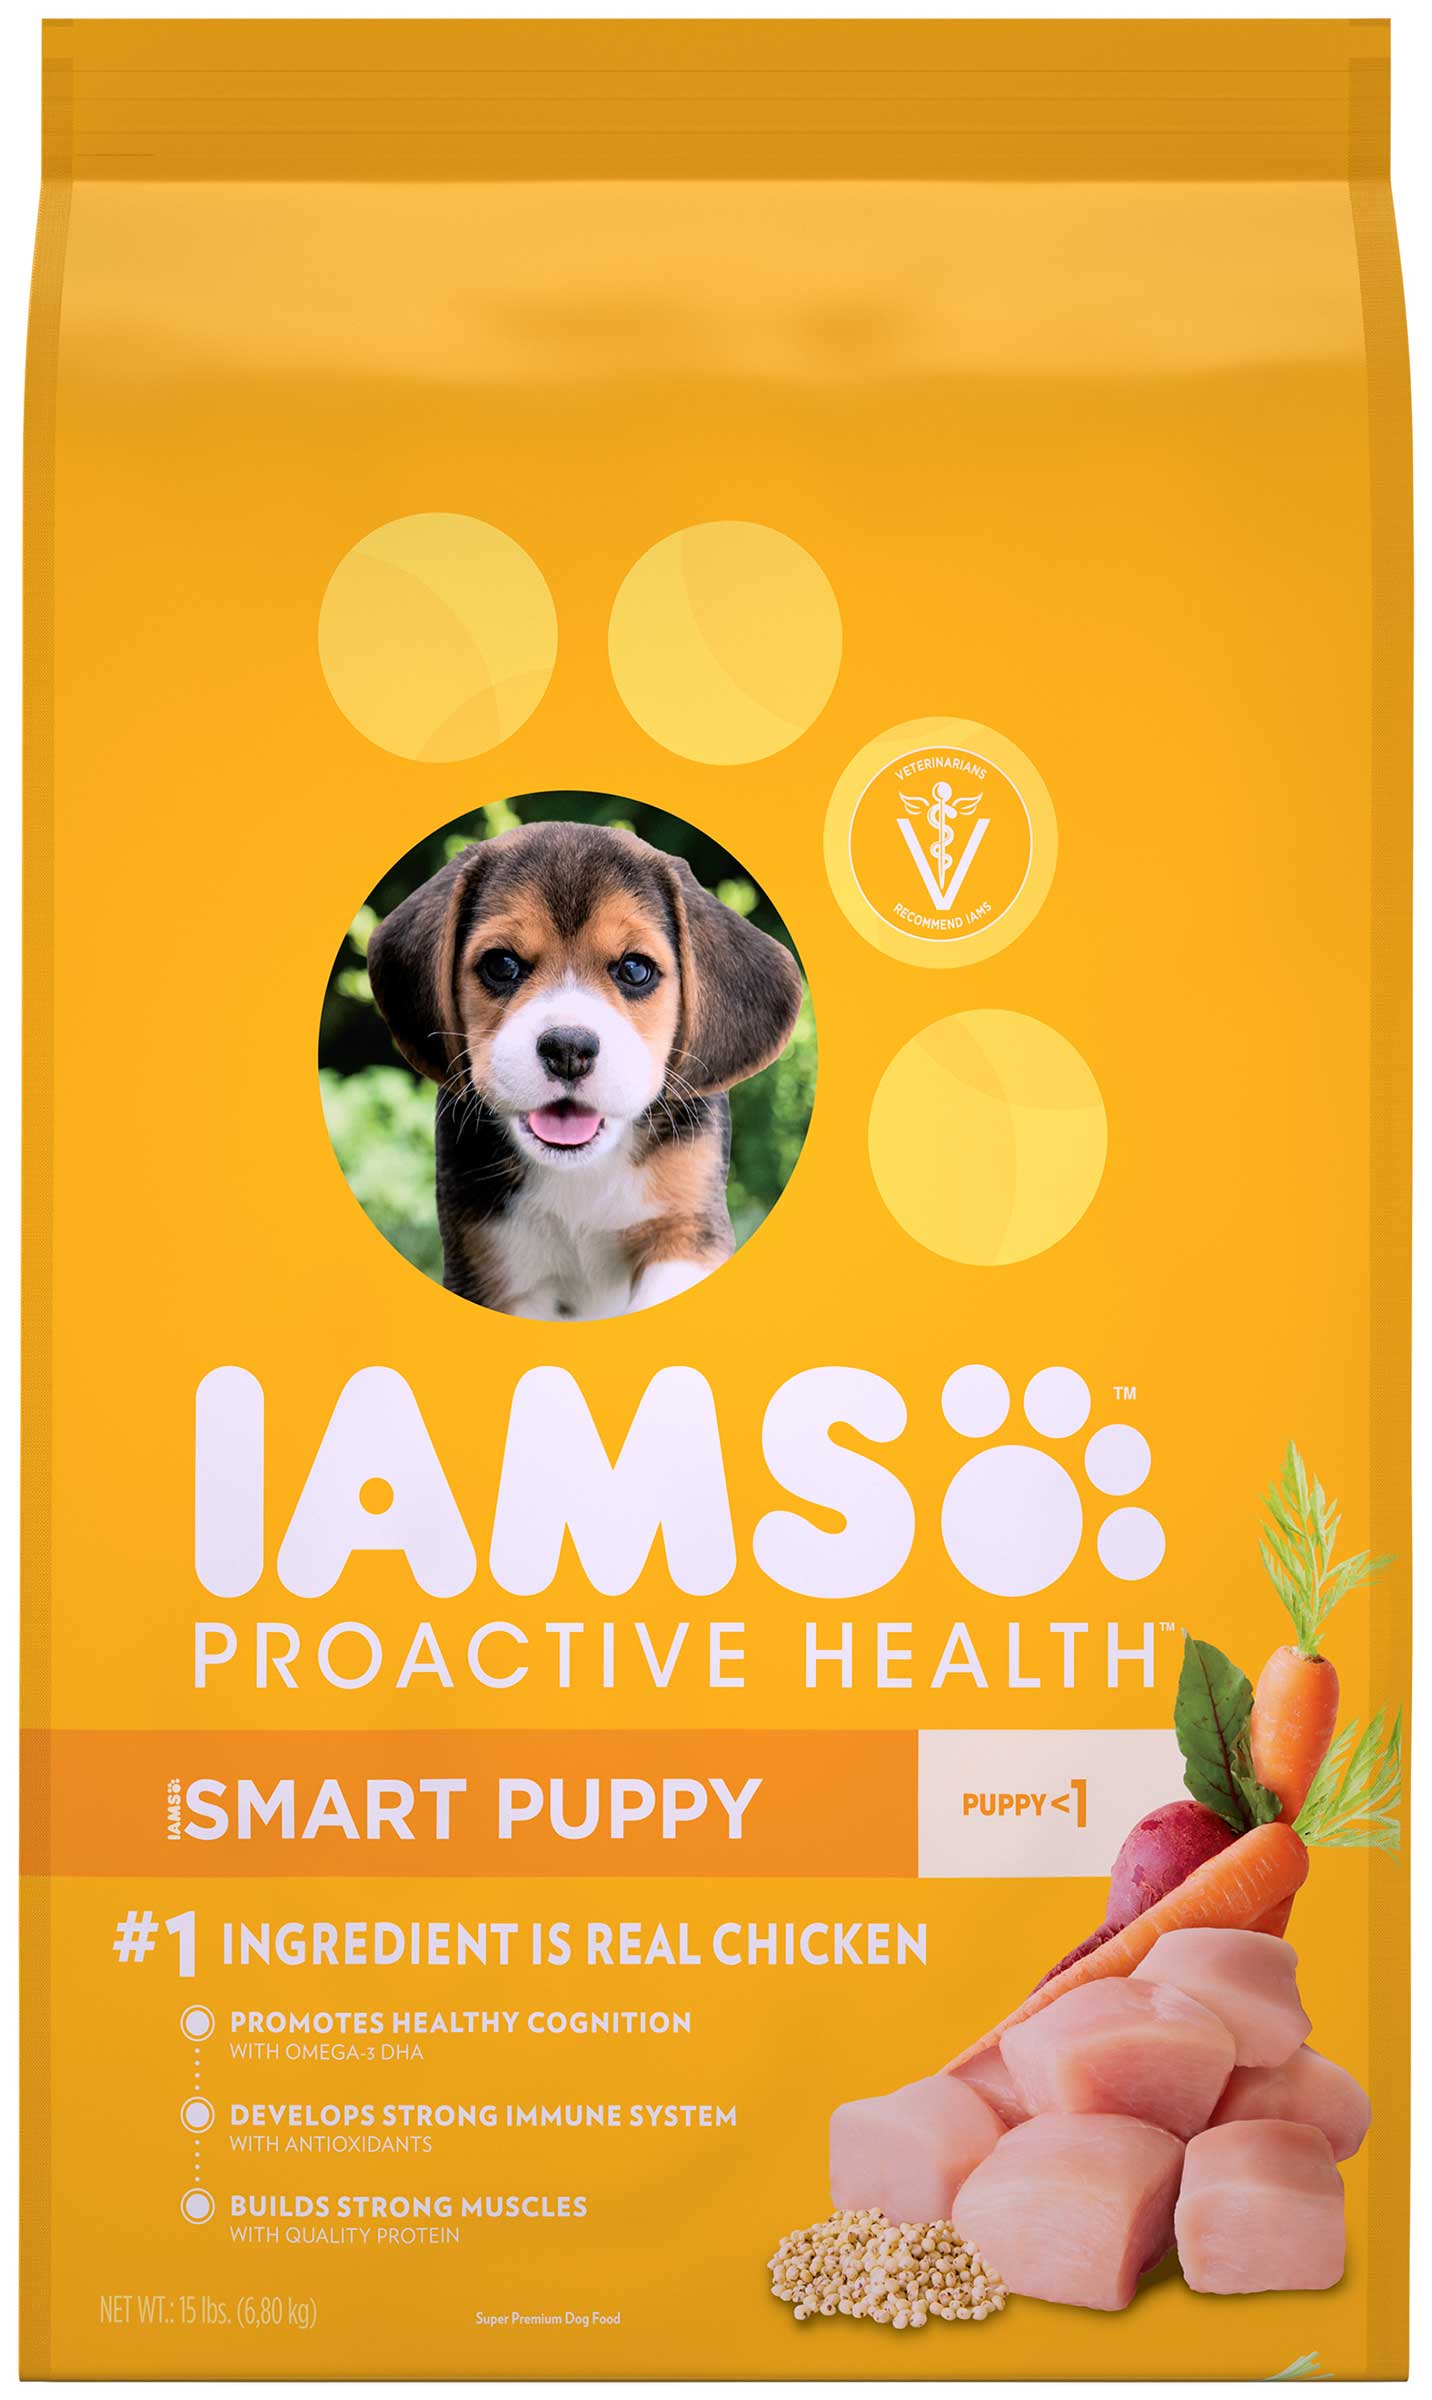 愛慕思 健康優活 幼犬(雞肉)
Iams Proactive Health™ Smart Puppy